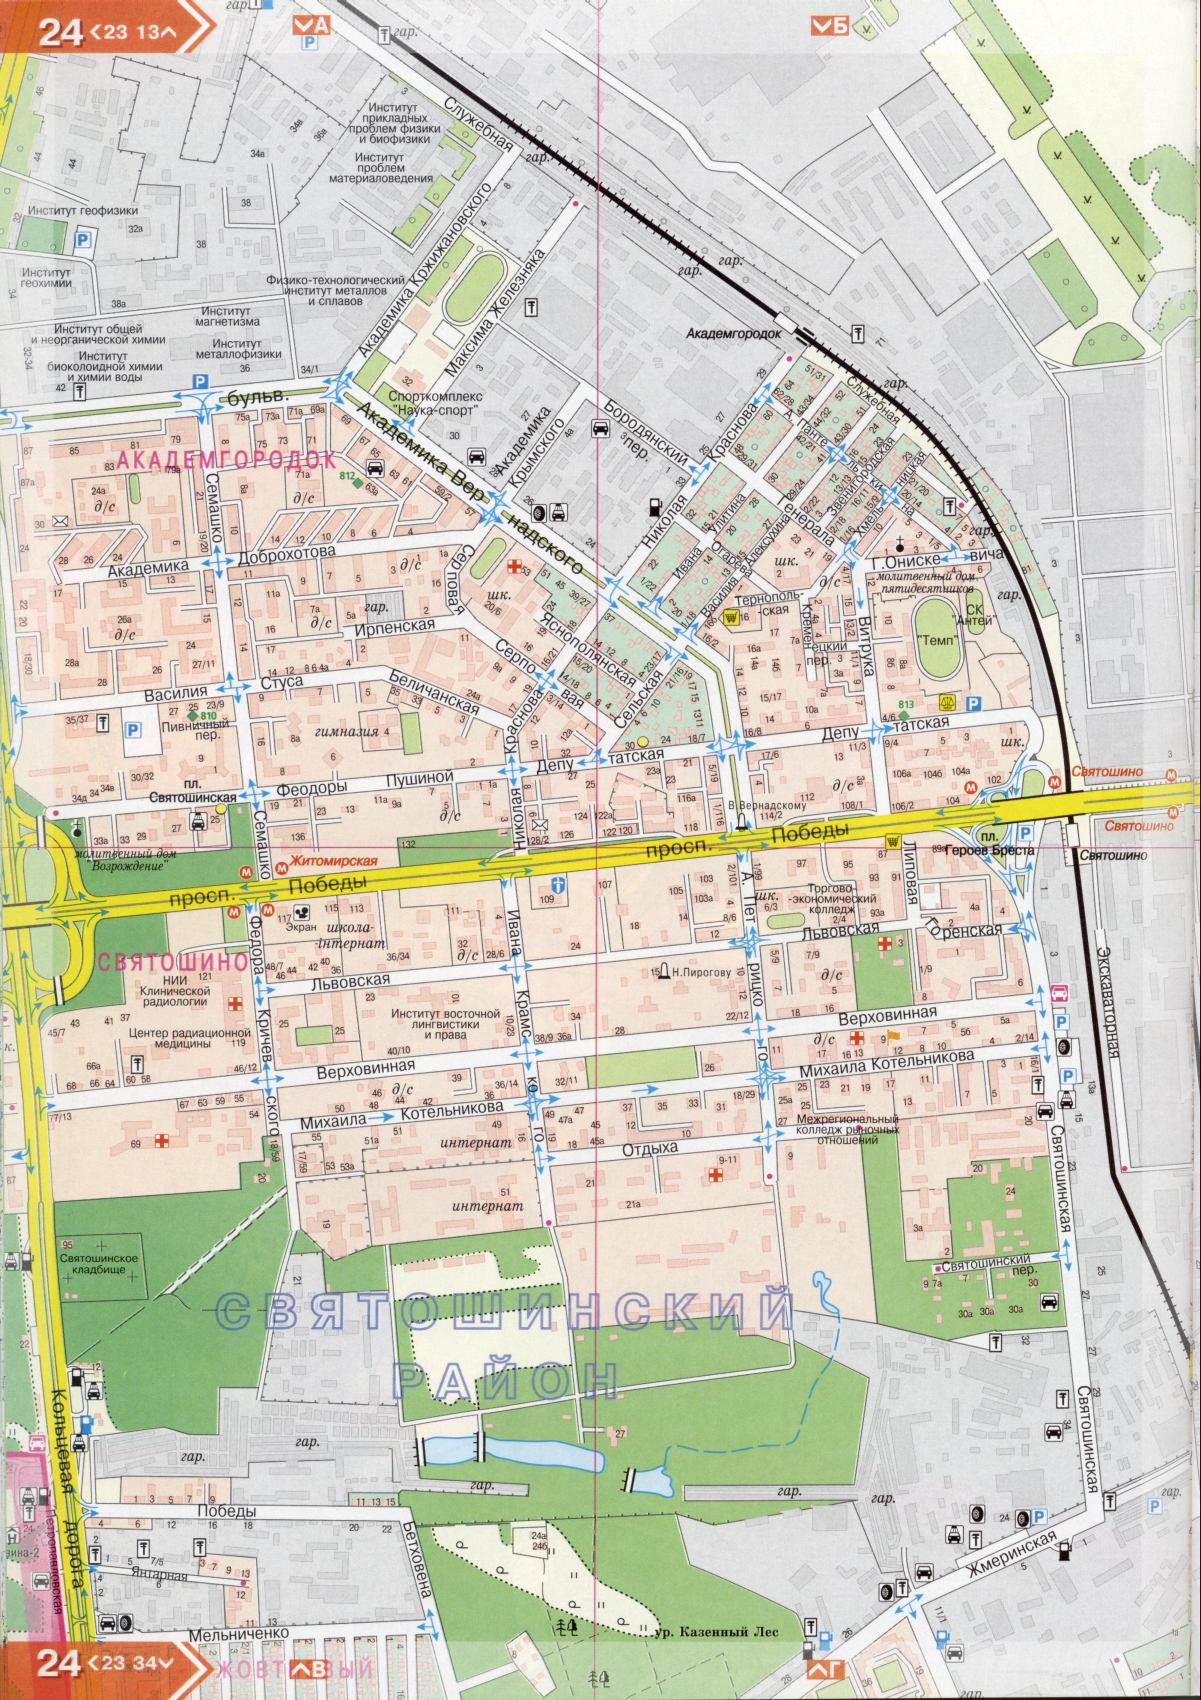 Kiev carte détails 1cm = 150m pour 45 feuilles. Carte de Kiev de l'atlas des routes. Télécharger une carte détaillée, A2 - Svyatoshinskaya rue ville de Kiev